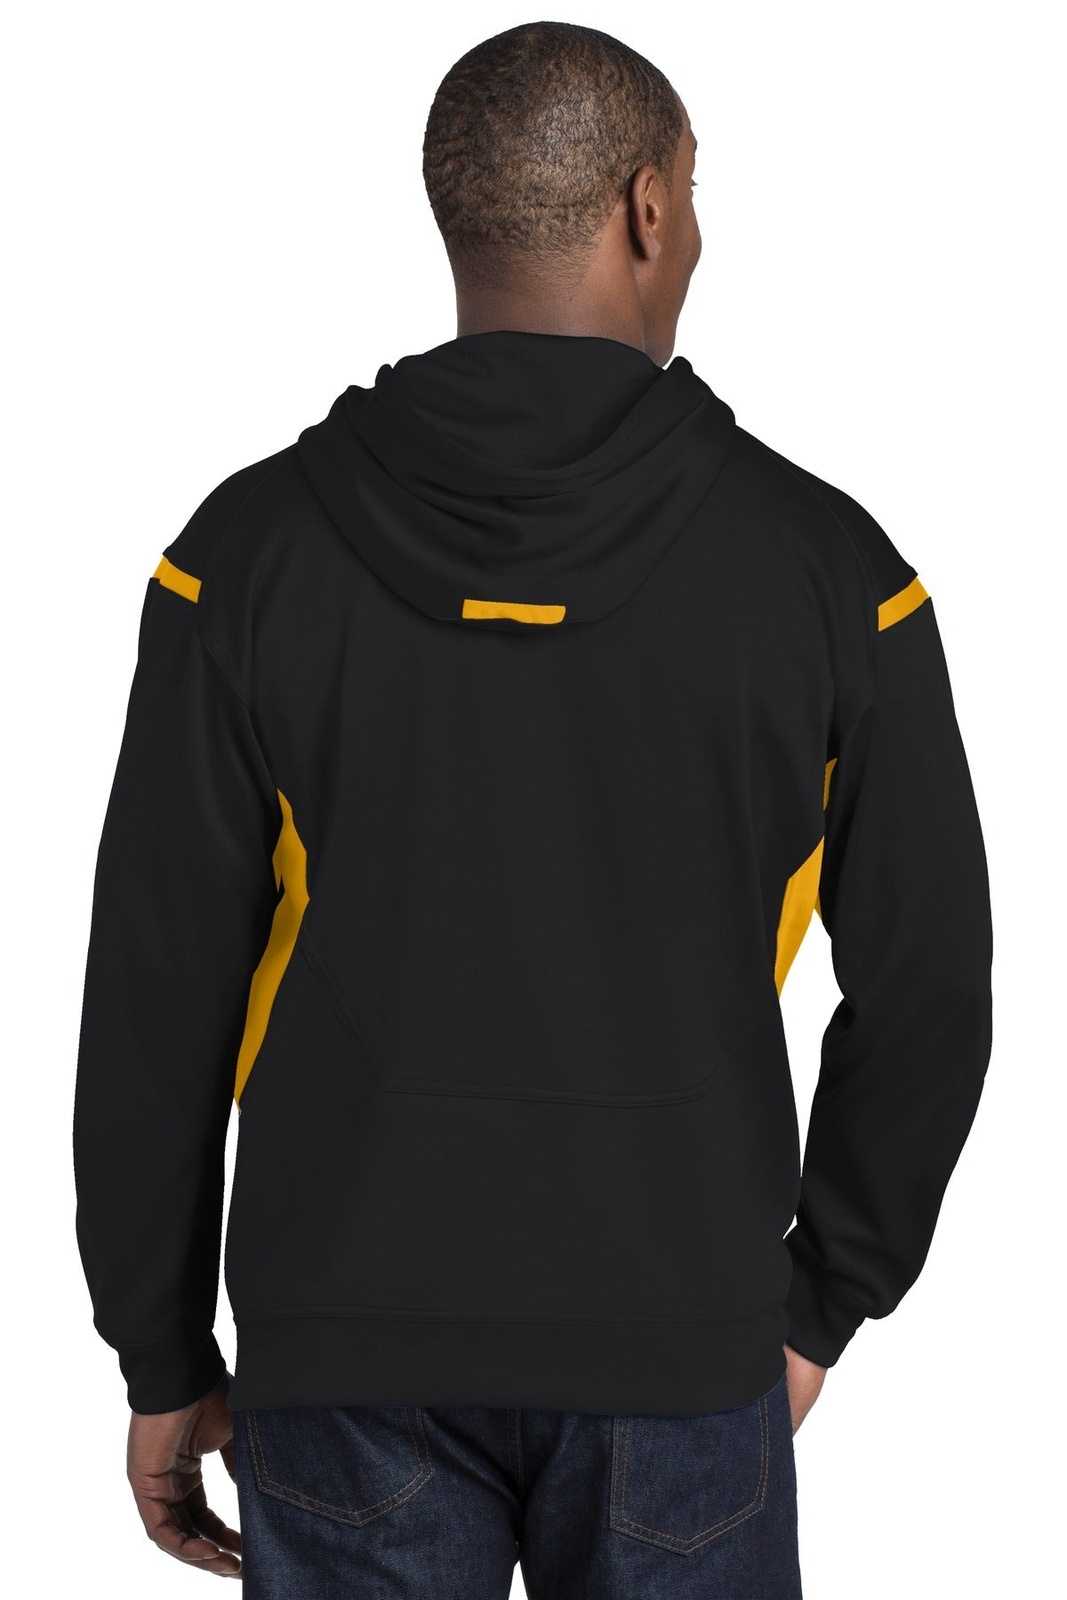 Sport-Tek F246 Tech Fleece Colorblock Hooded Sweatshirt - Black Gold - HIT a Double - 2